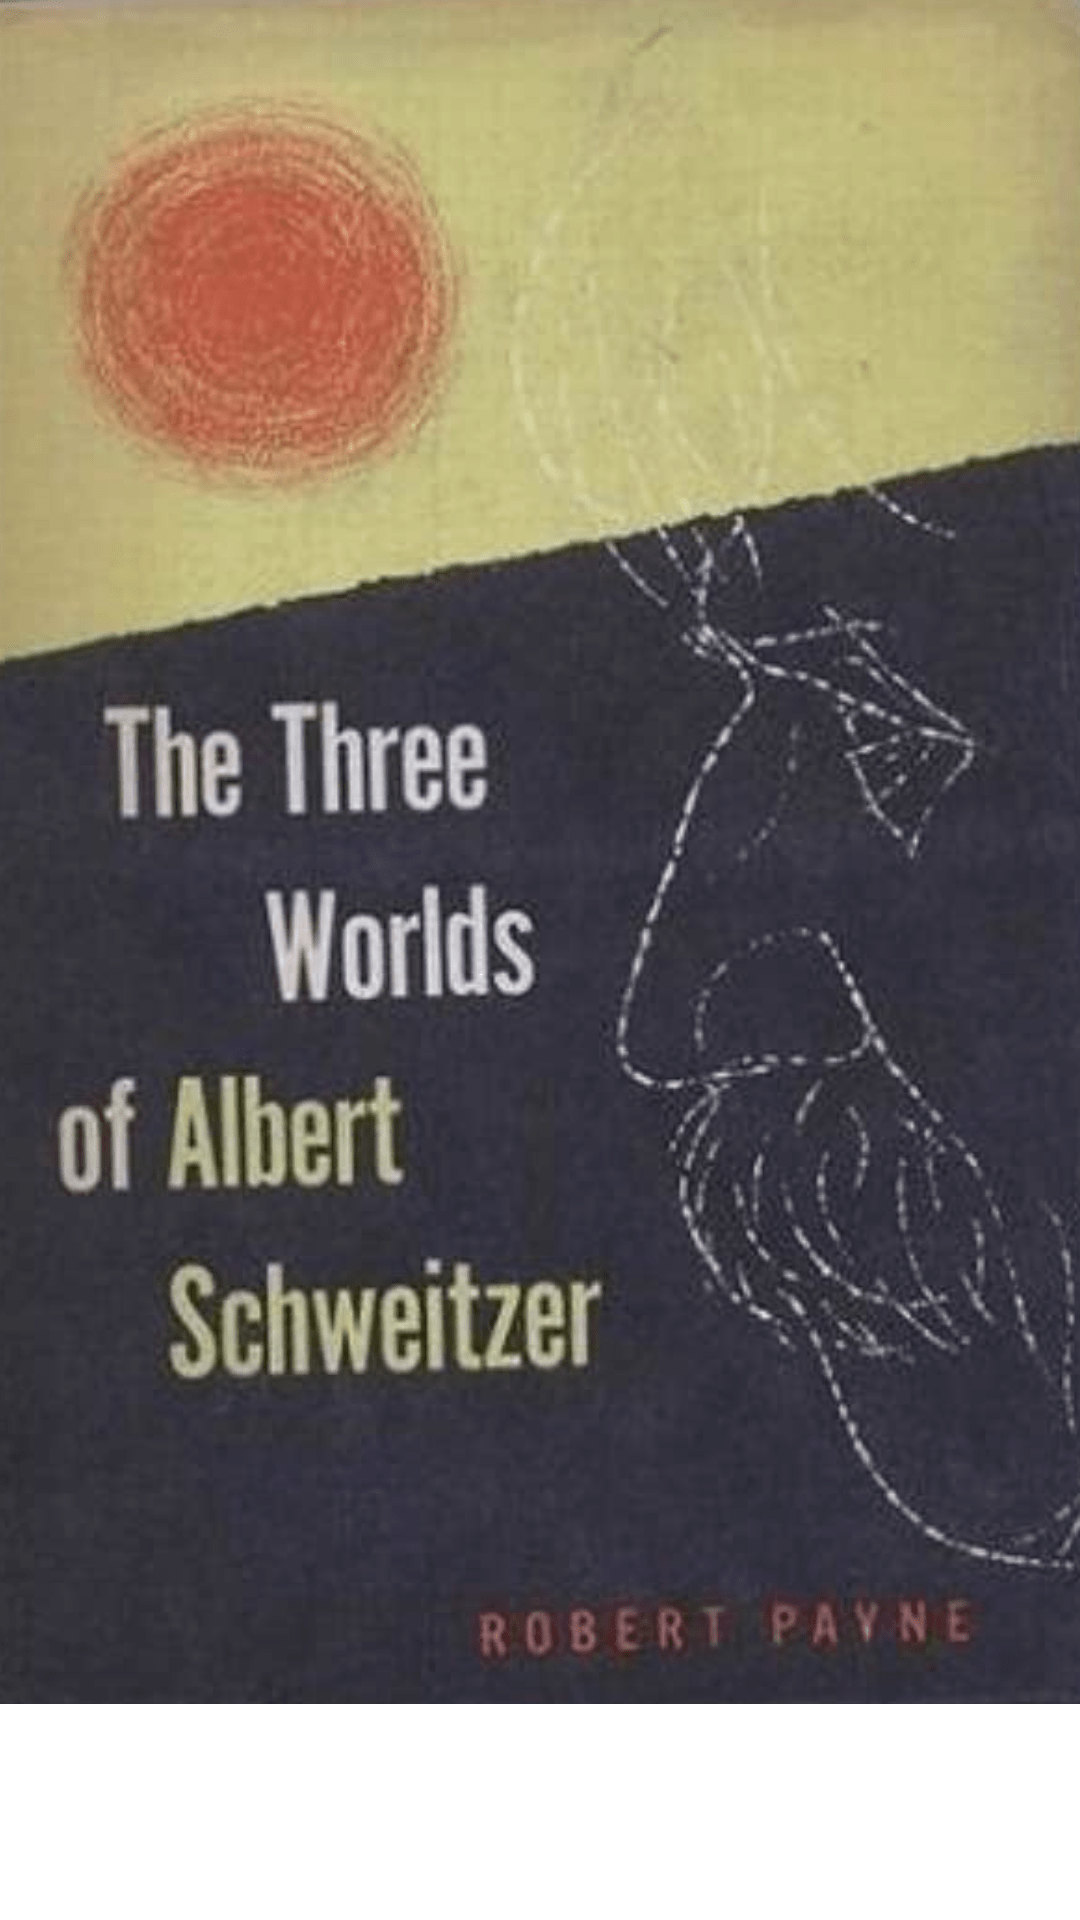 The Three Worlds of Albert Schweitzer